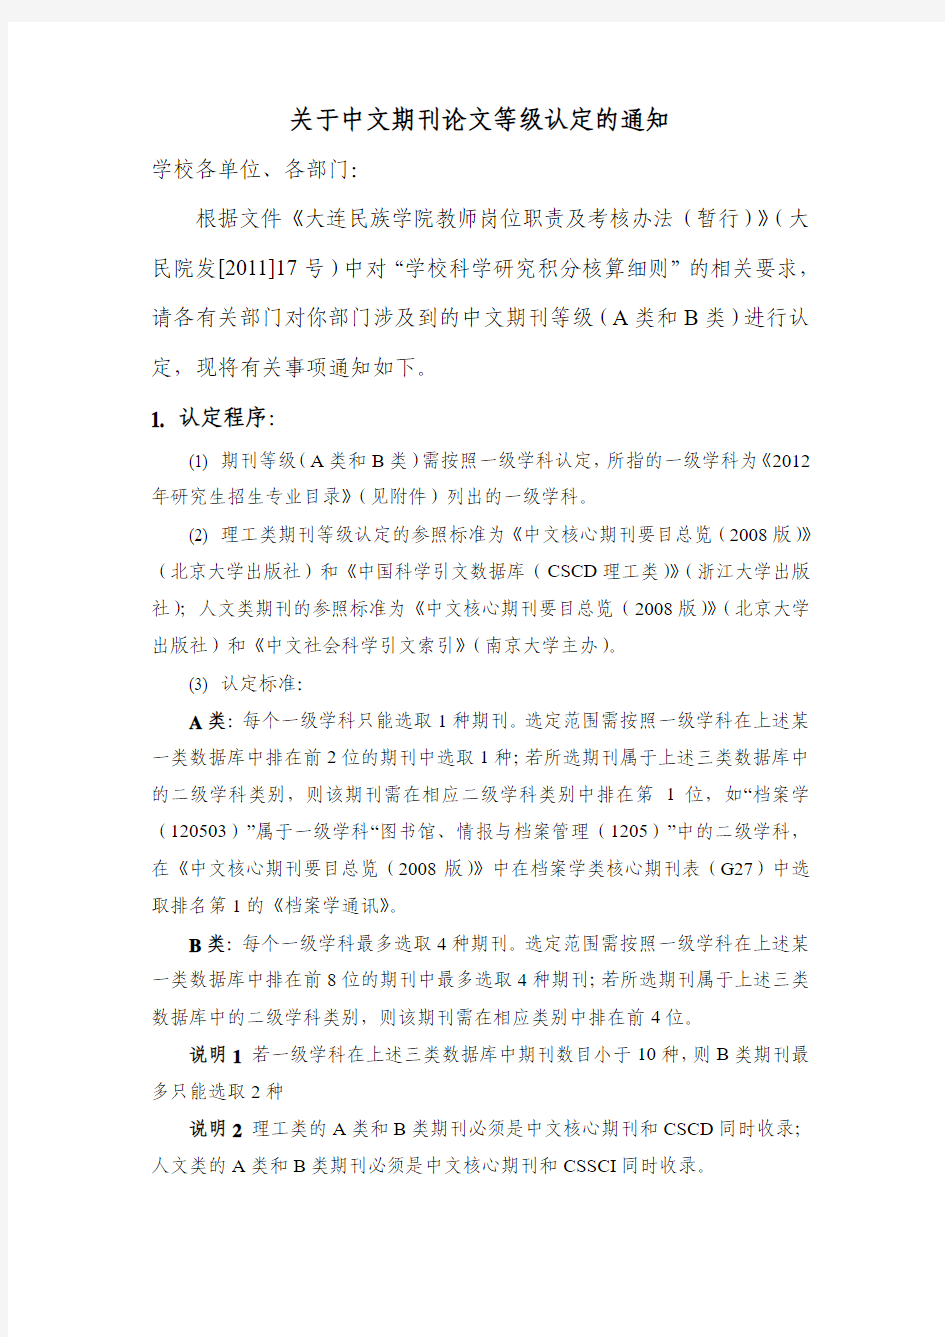 关于中文期刊论文等级的认定标准的通知